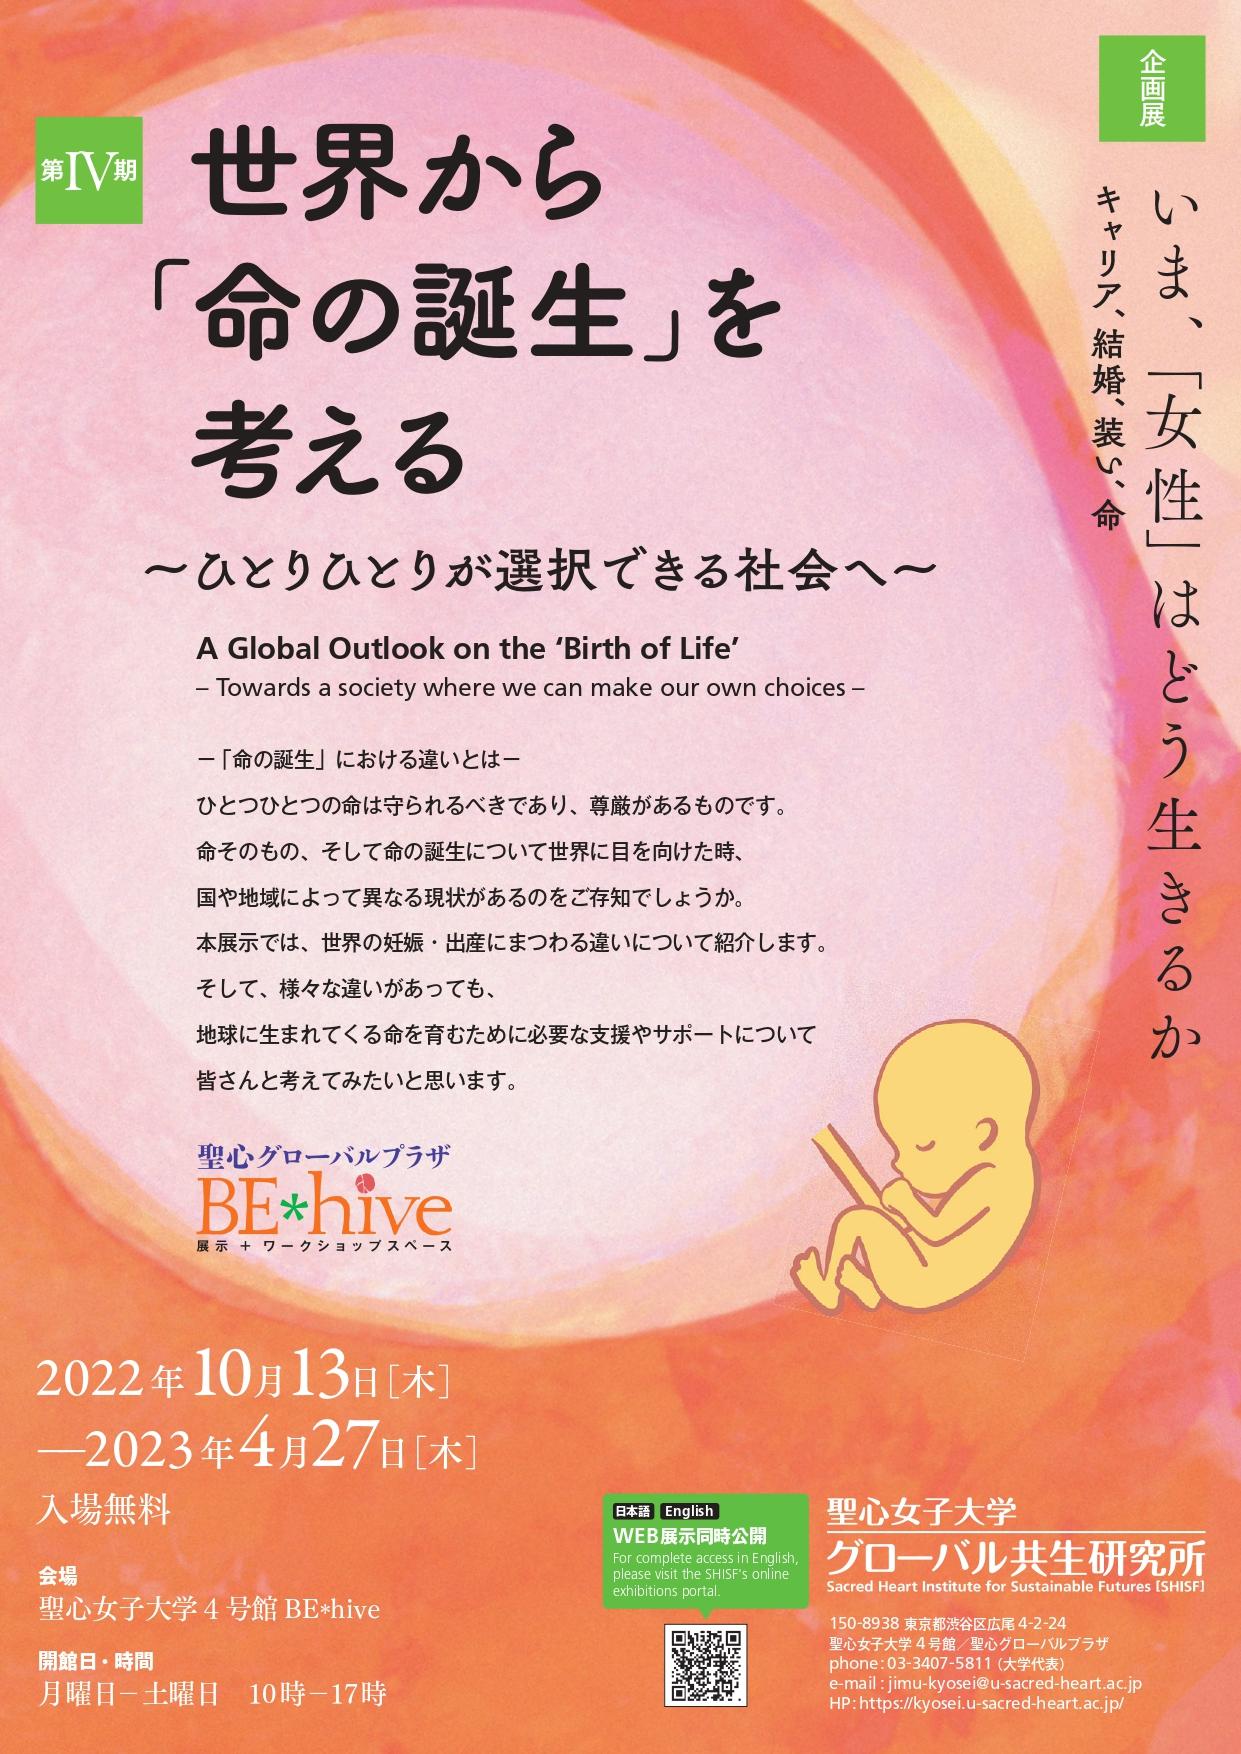 聖心女子大学が2023年4月27日まで企画展示「世界から『命の誕生』を考える」を実施 -- 女性の生き方を4つのテーマから考える「いま、『女性』はどう生きるか」第IV期